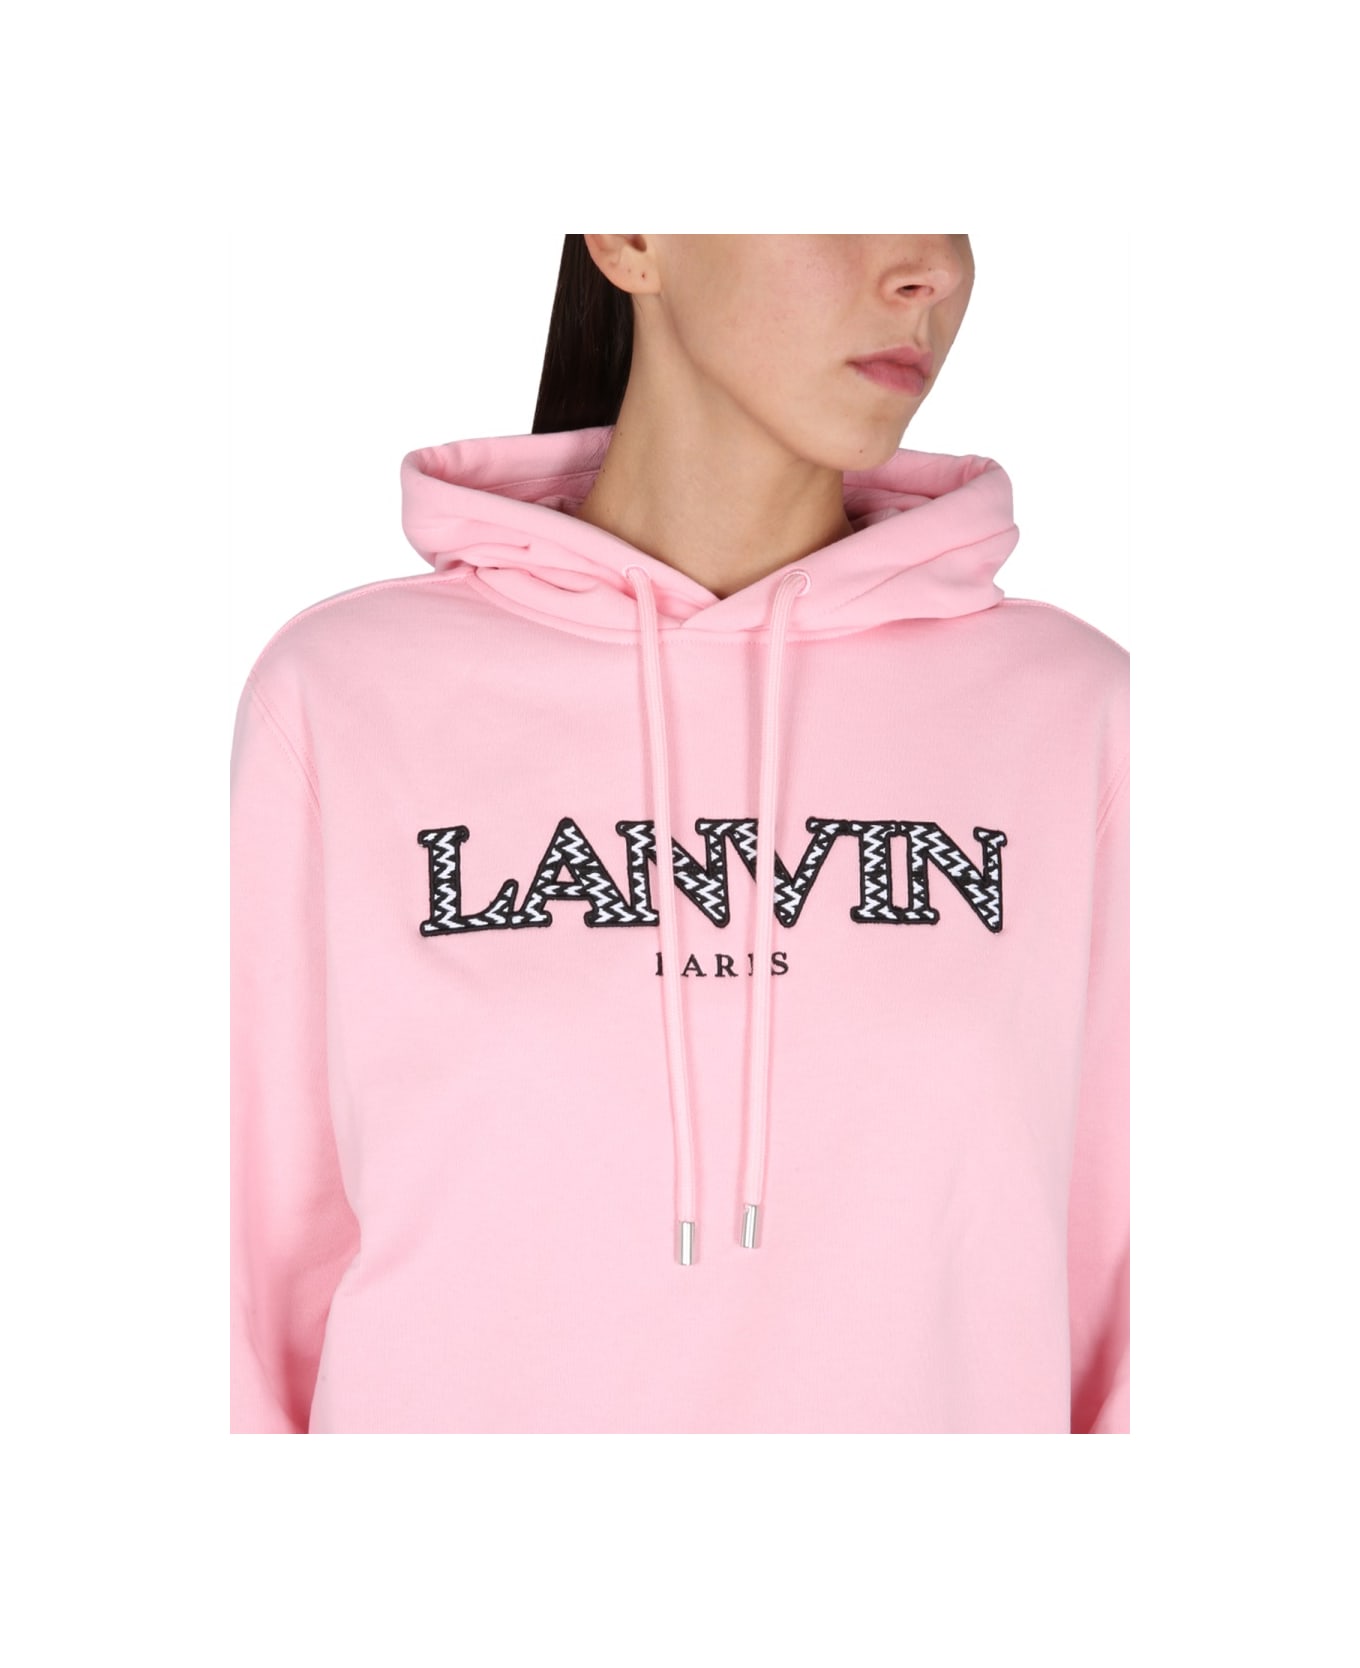 Lanvin Rose Cotton Sweatshirt - PINK